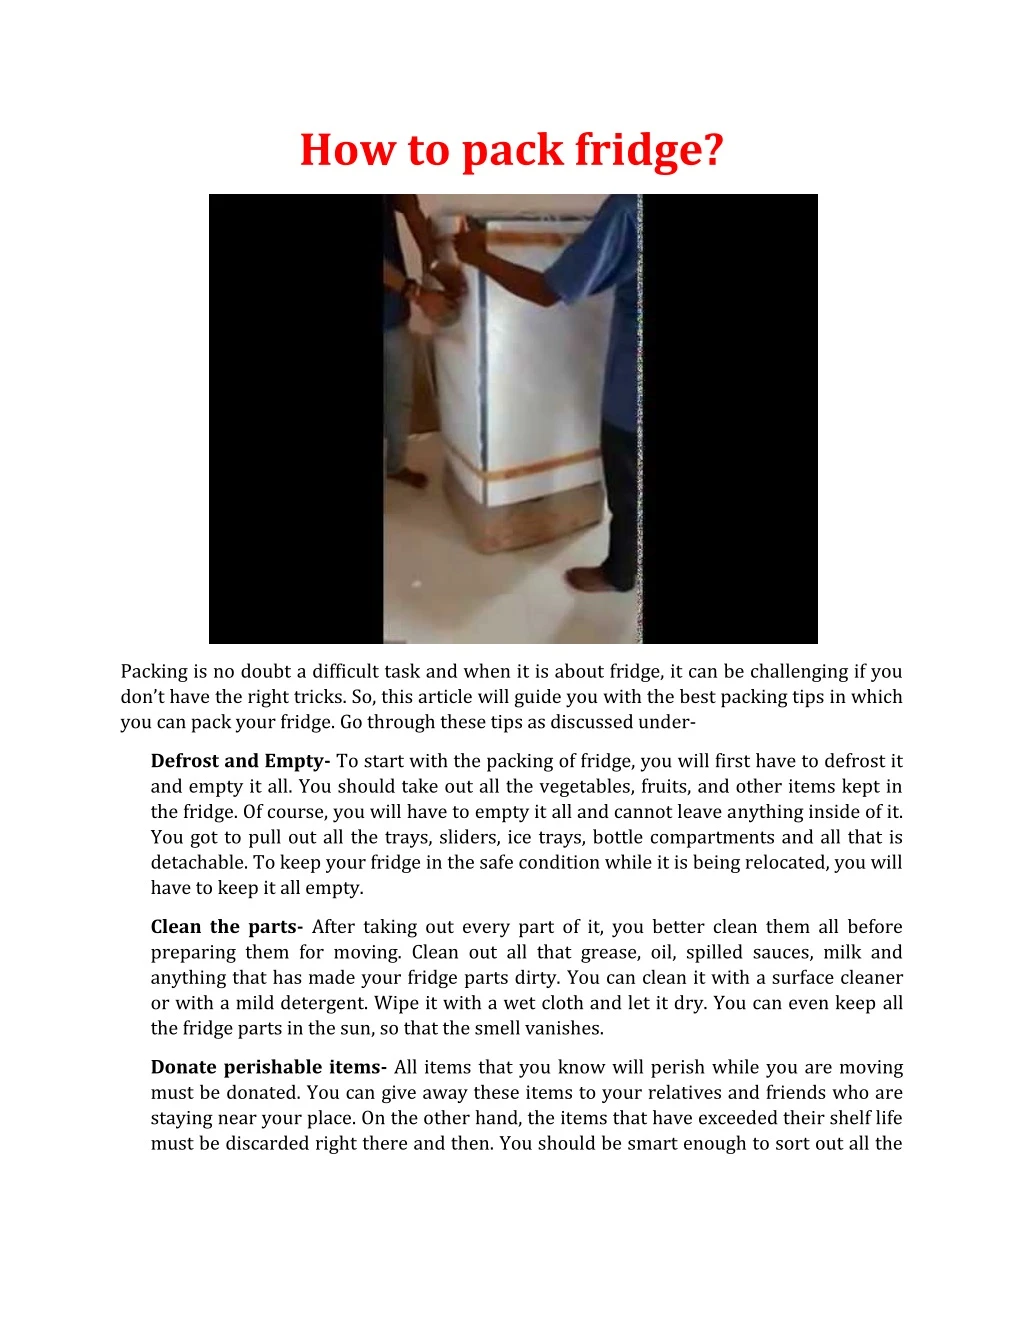 how to pack fridge